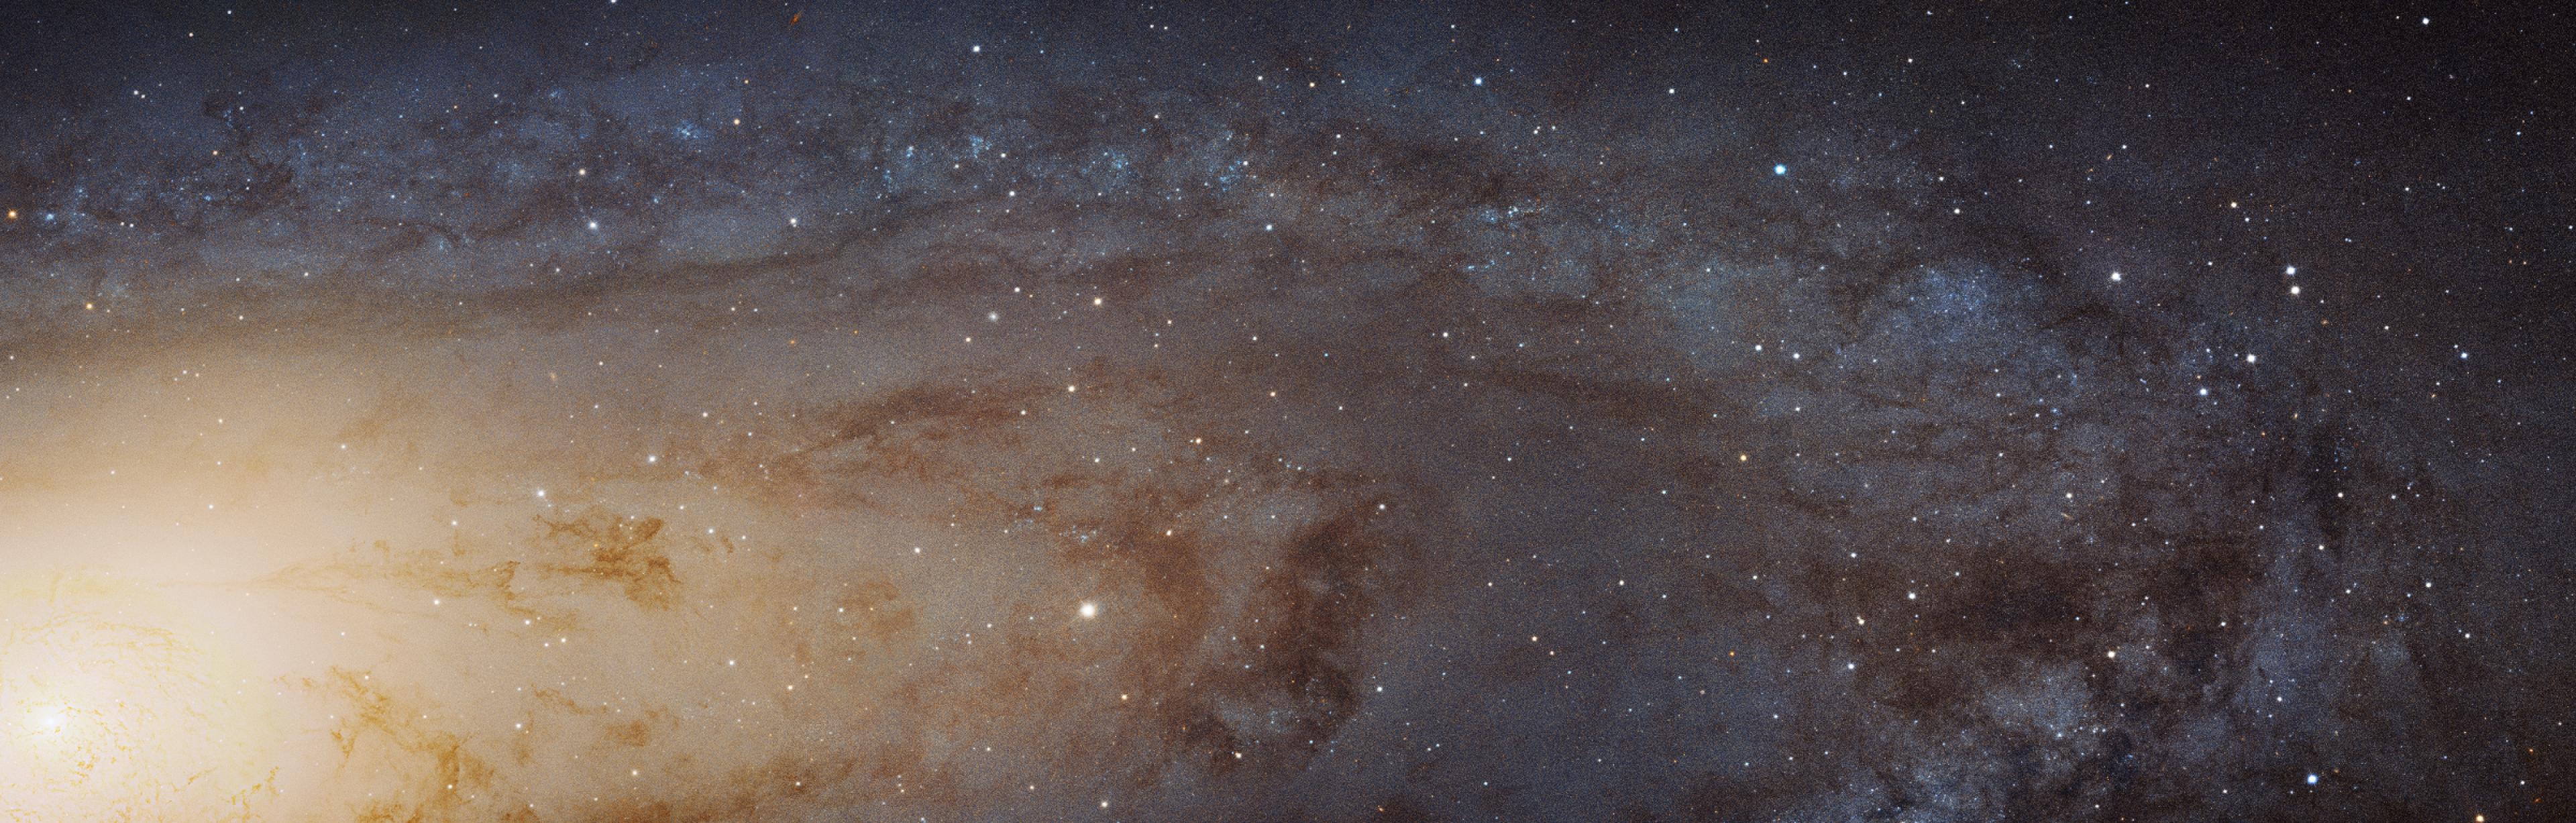 Ausschnitt der Andromeda-Galaxie, in der einzelne Sterne als Punkte sichtbar sind